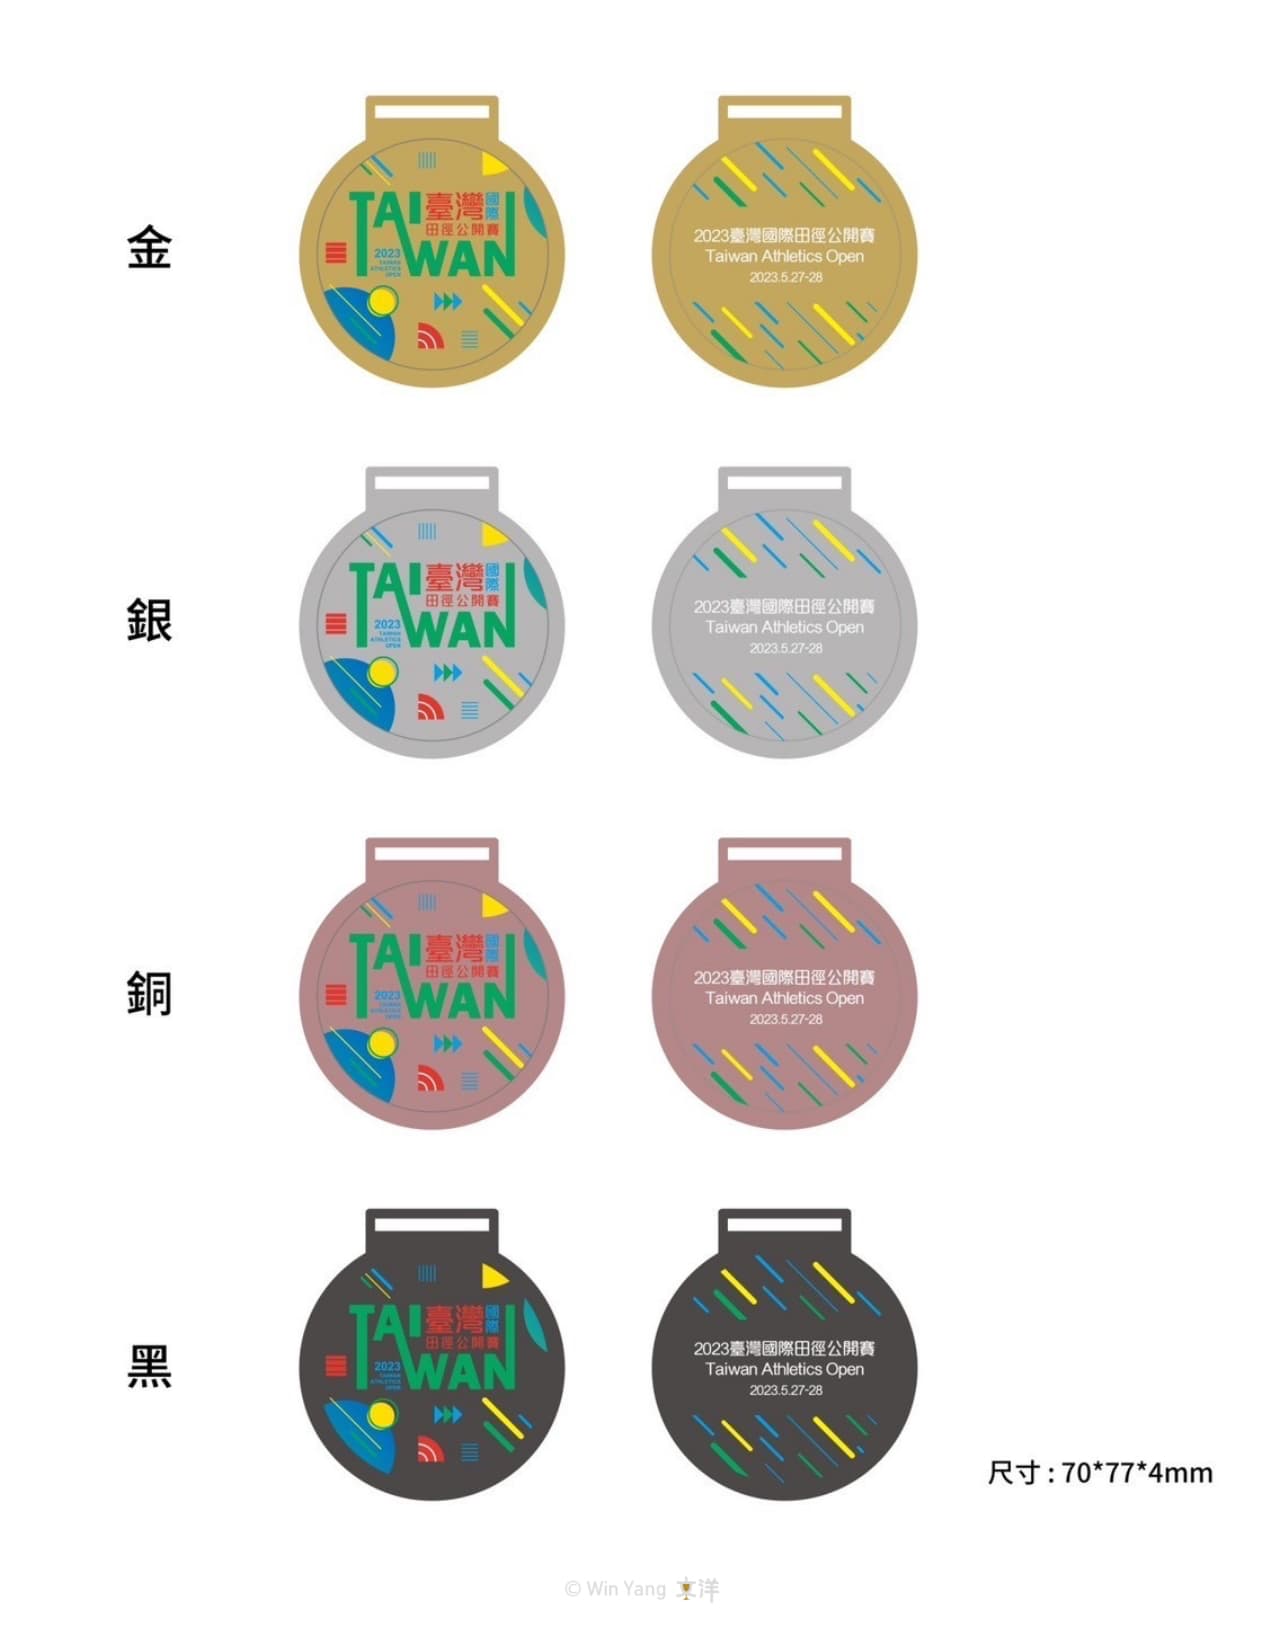 台灣國際田徑公開賽客製化獎牌設計